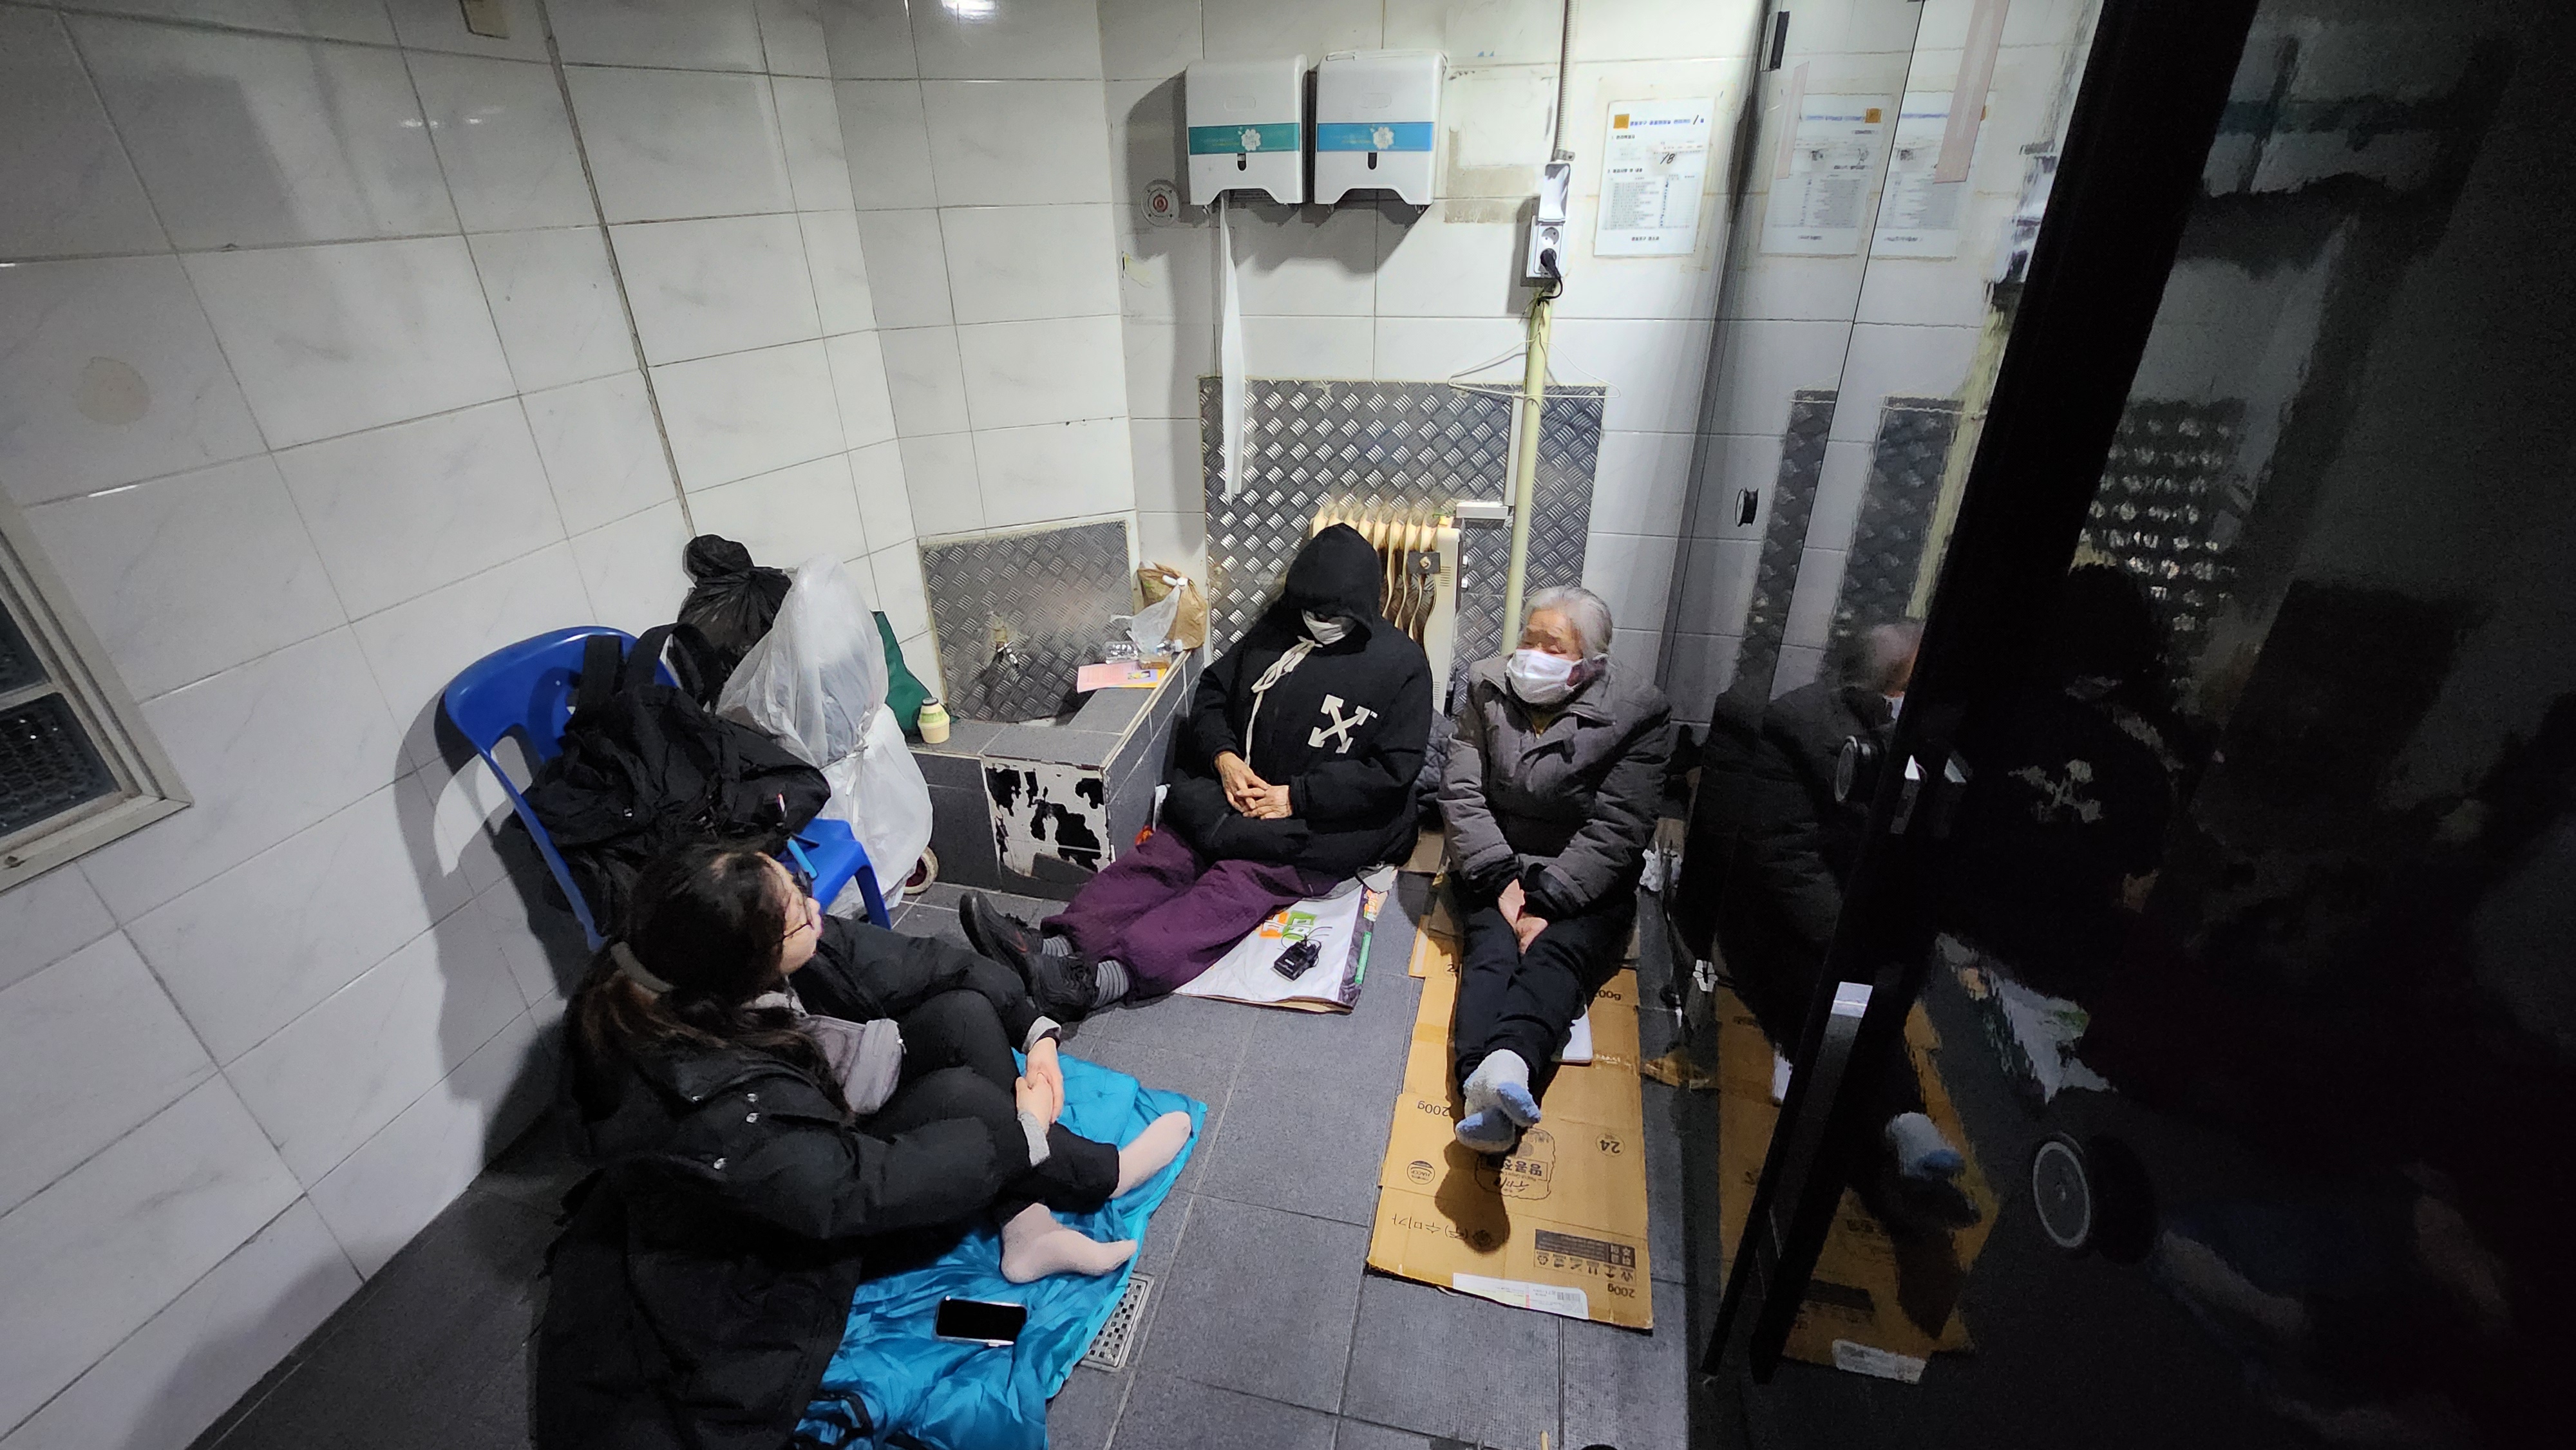 영등포 쪽방촌 공중화장실에서 지내는 70대 여성 노숙인들